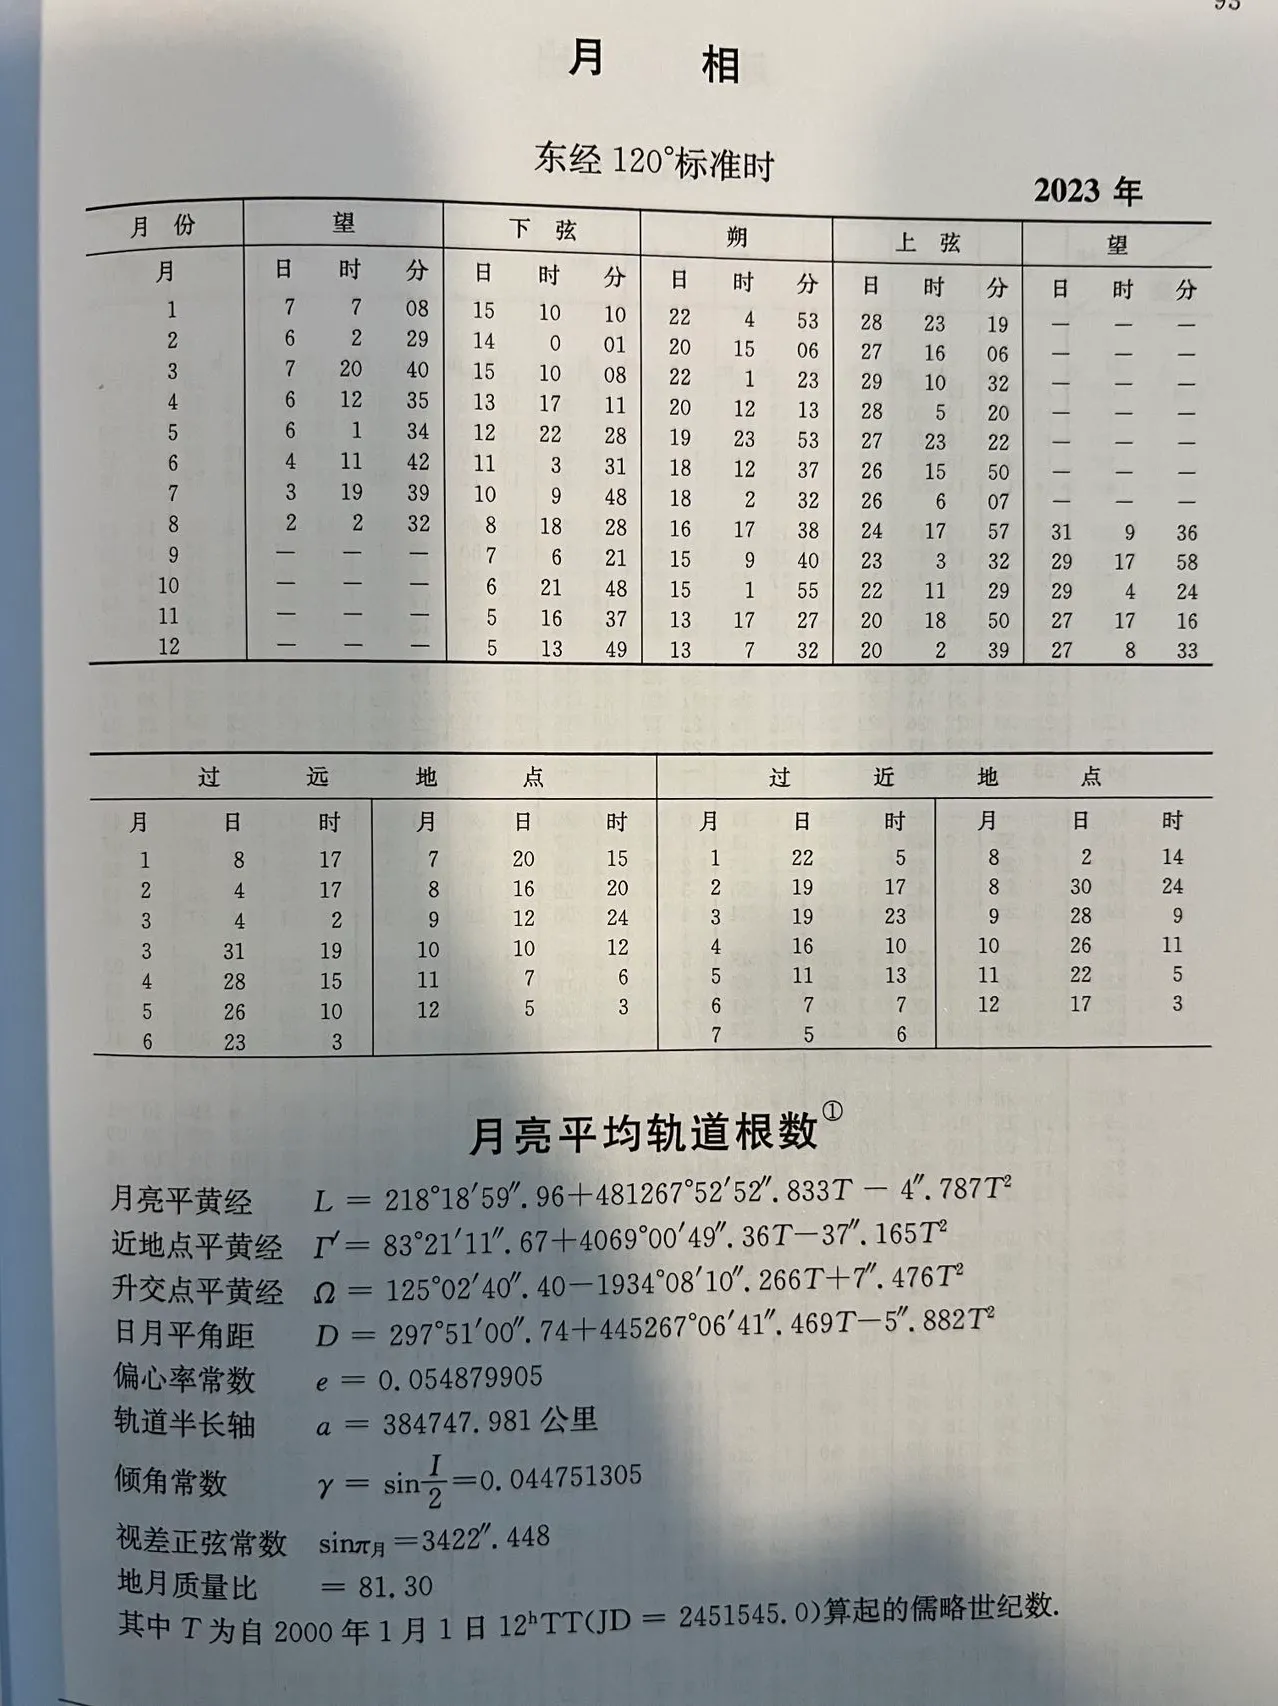 2023年月相，取自《2023年中国天文年历》